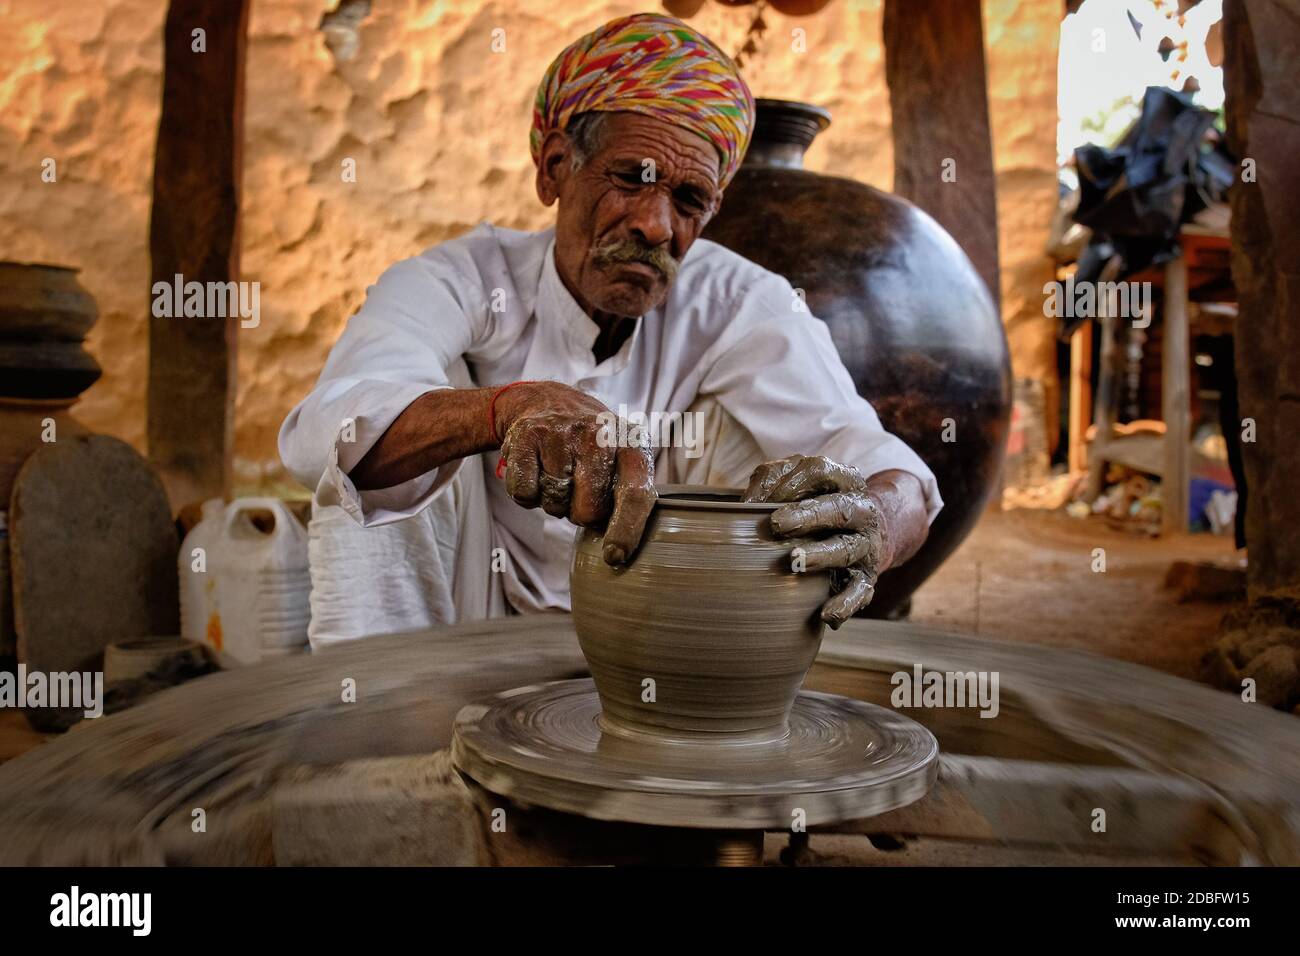 Indian potter à l'œuvre: Lancer la roue de potter et façonner le vaisseau en céramique et l'argile: Pot, pot dans l'atelier de poterie. Maître expérimenté. Poignée Banque D'Images